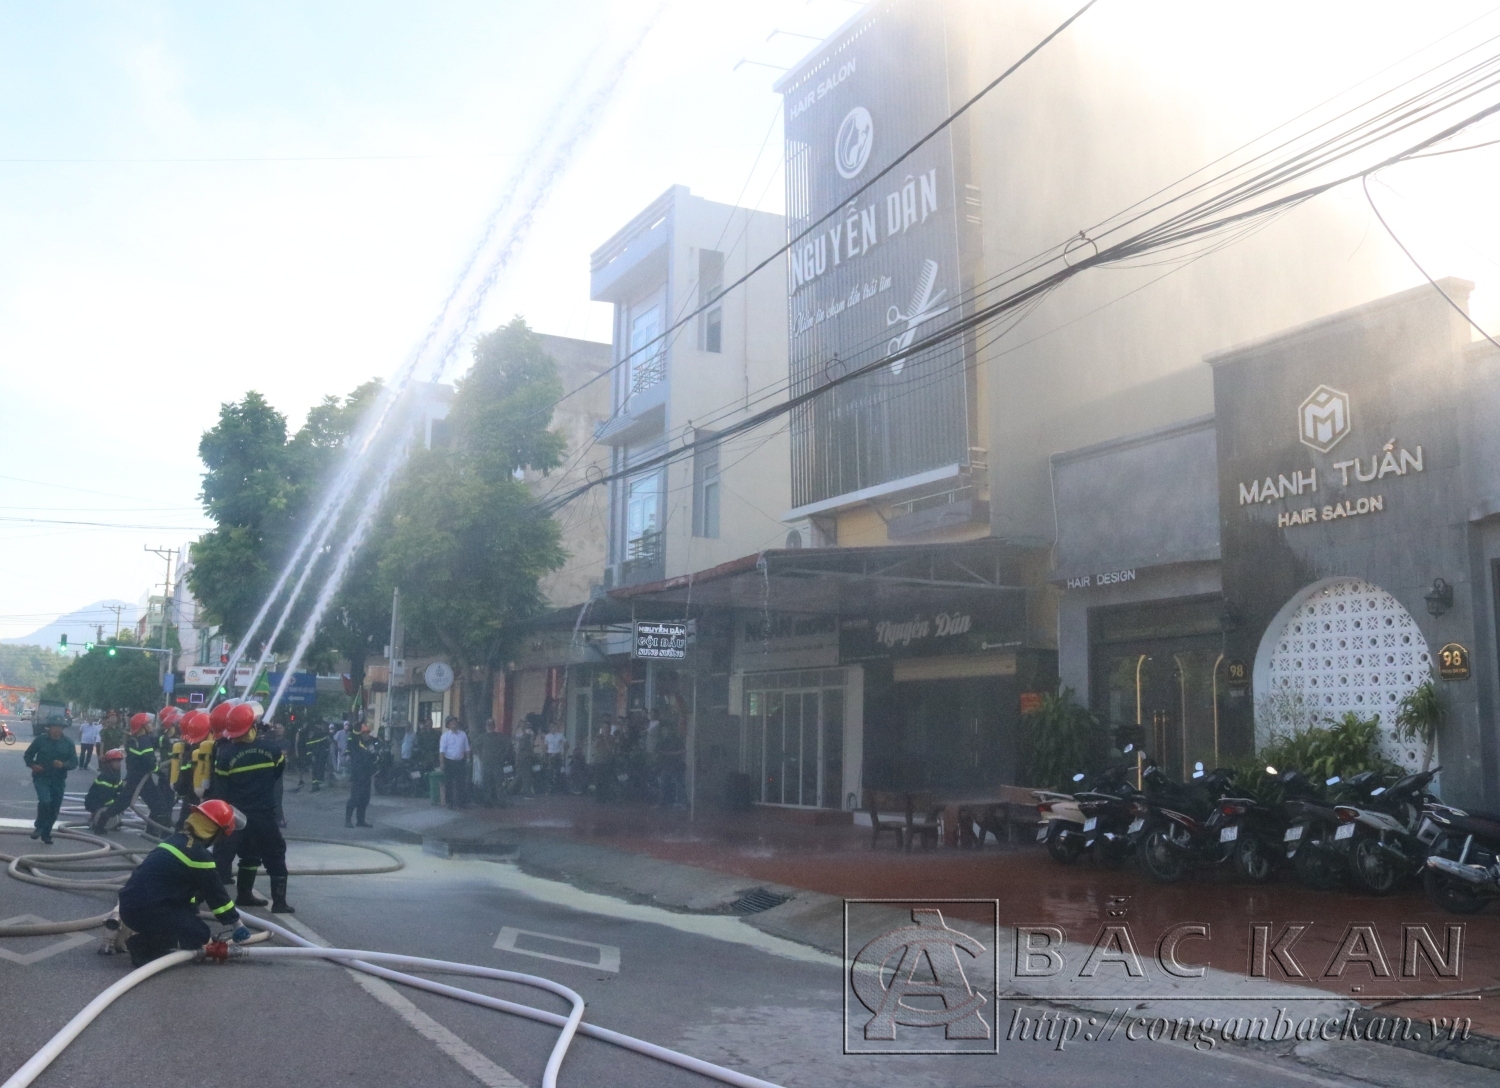 Thực tập phương án chữa cháy và cứu nạn, cứu hộ tại tổ liên gia an toàn phòng cháy chữa cháy tại tổ 5 phường Phùng Chí Kiên thành phố Bắc Kạn (2)